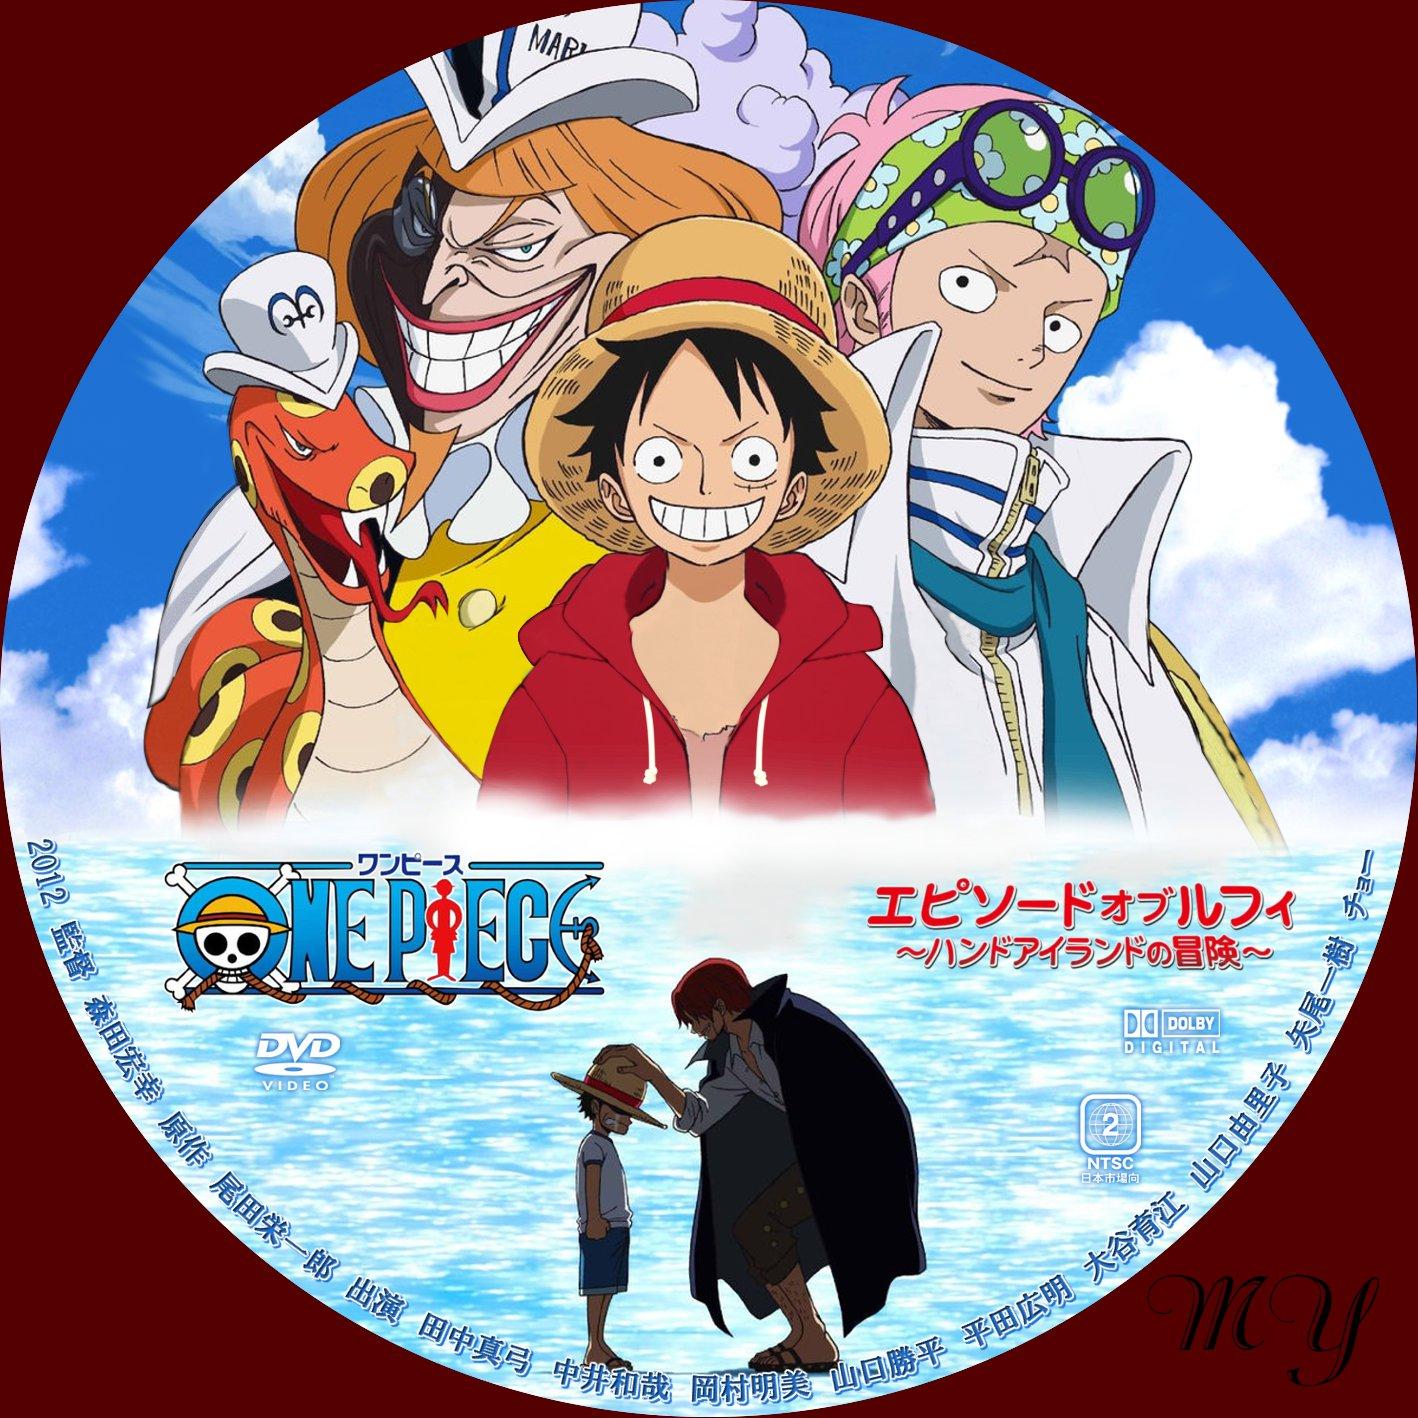 ほにょほにょな一日無料dvd ラベル製作室 One Piece エピソード オブ ルフィ ハンドアイランドの冒険